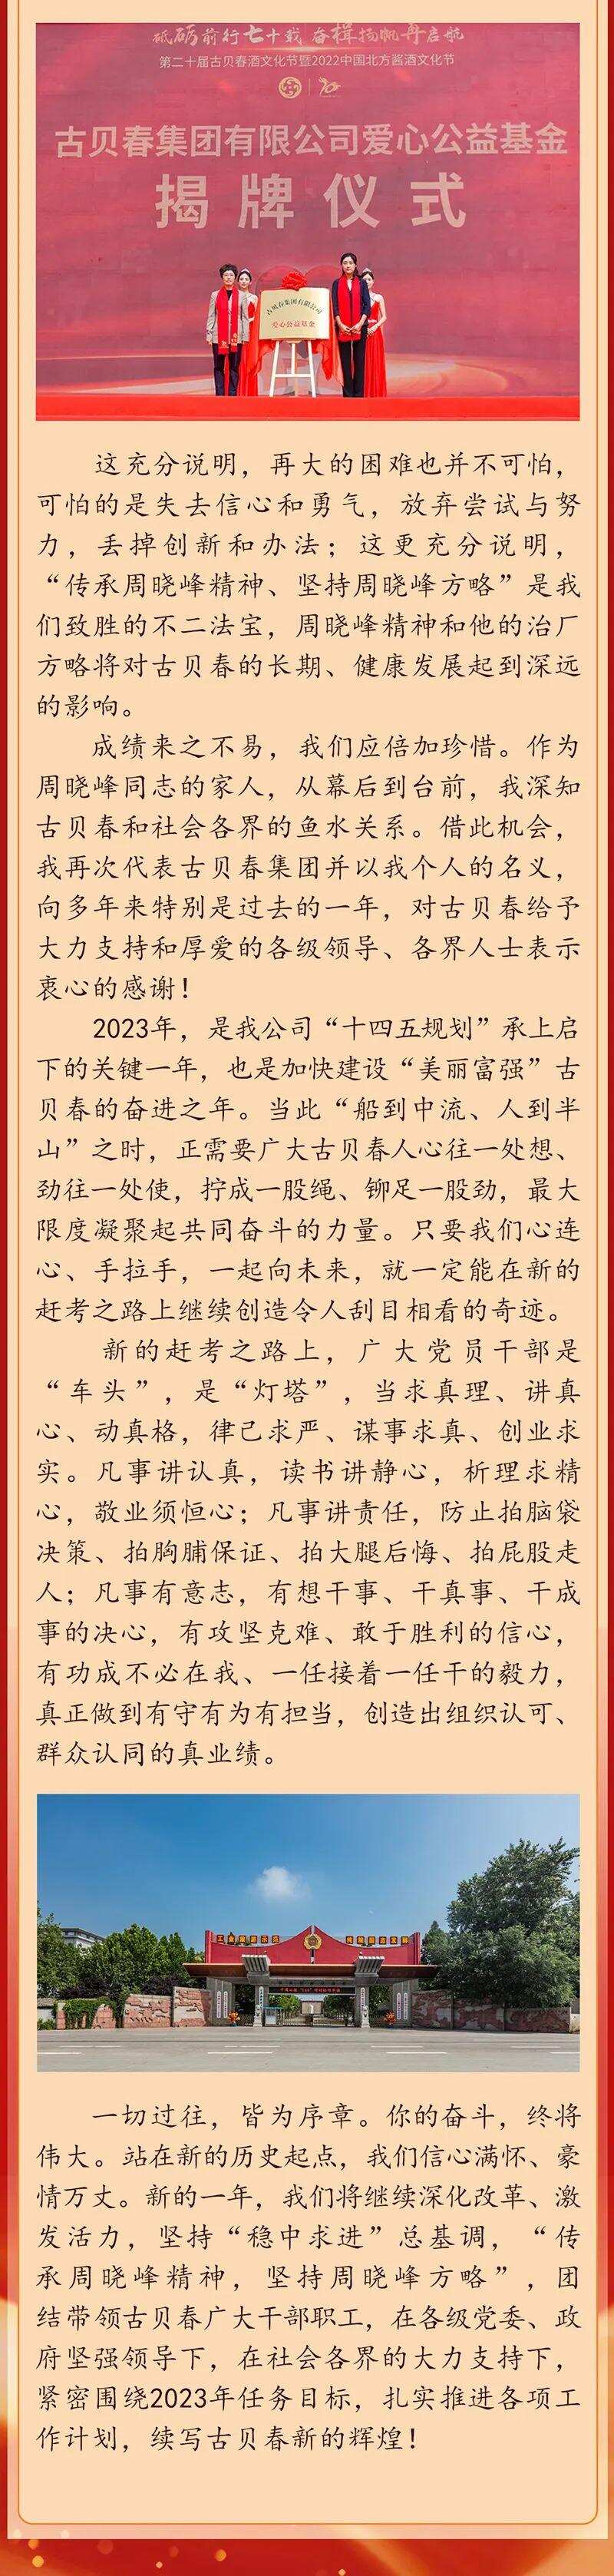 古贝春集团有限公司董事长徐秀菊2023年元旦献词